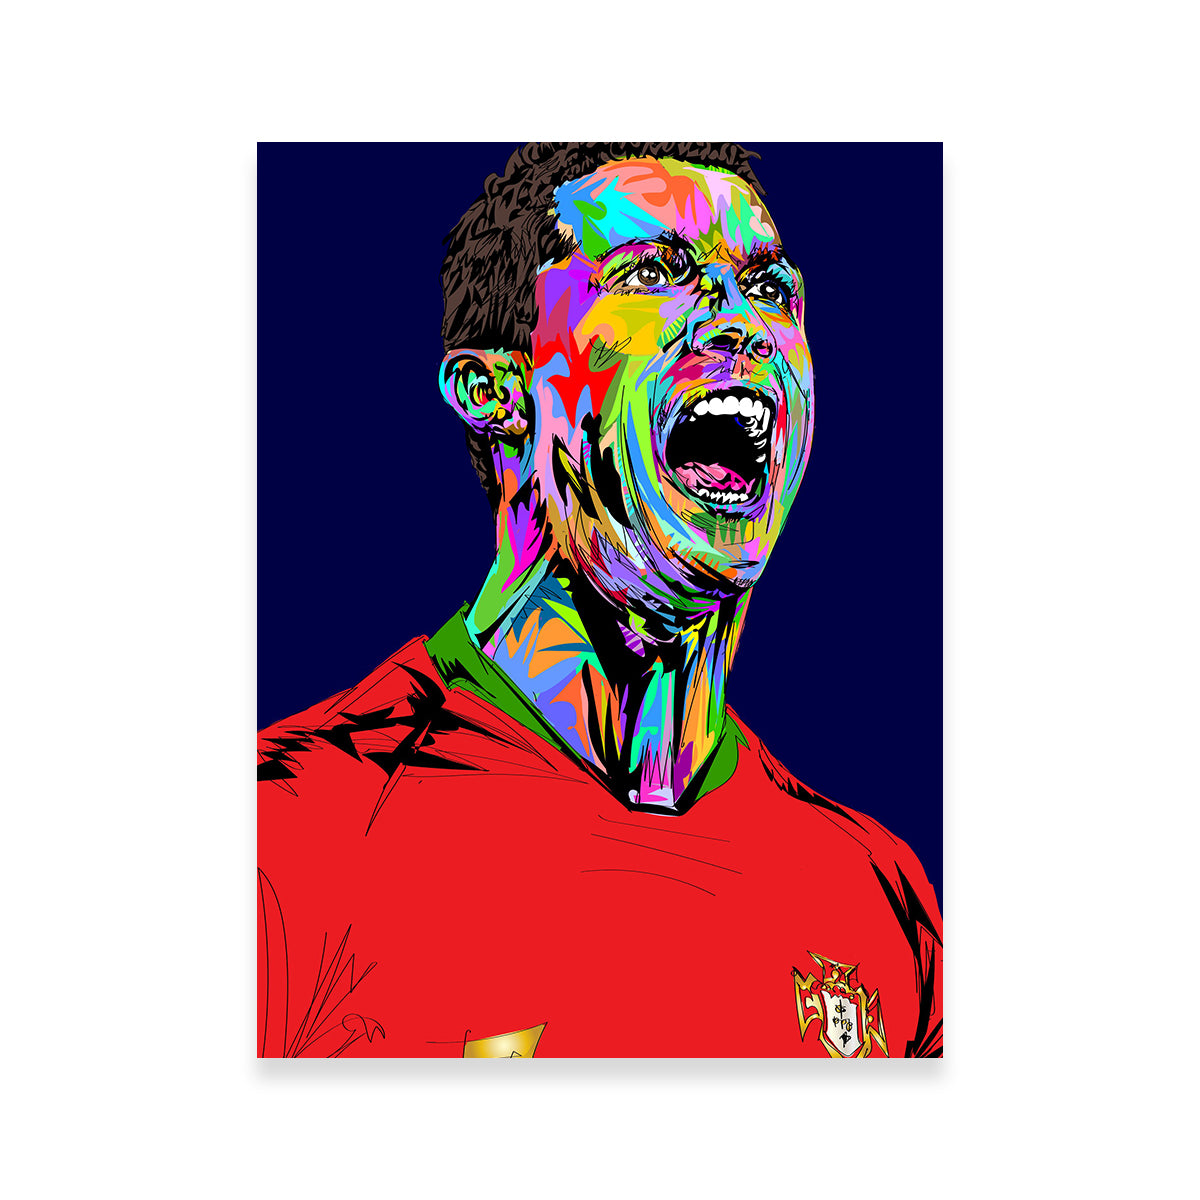 Ronaldo Abstract